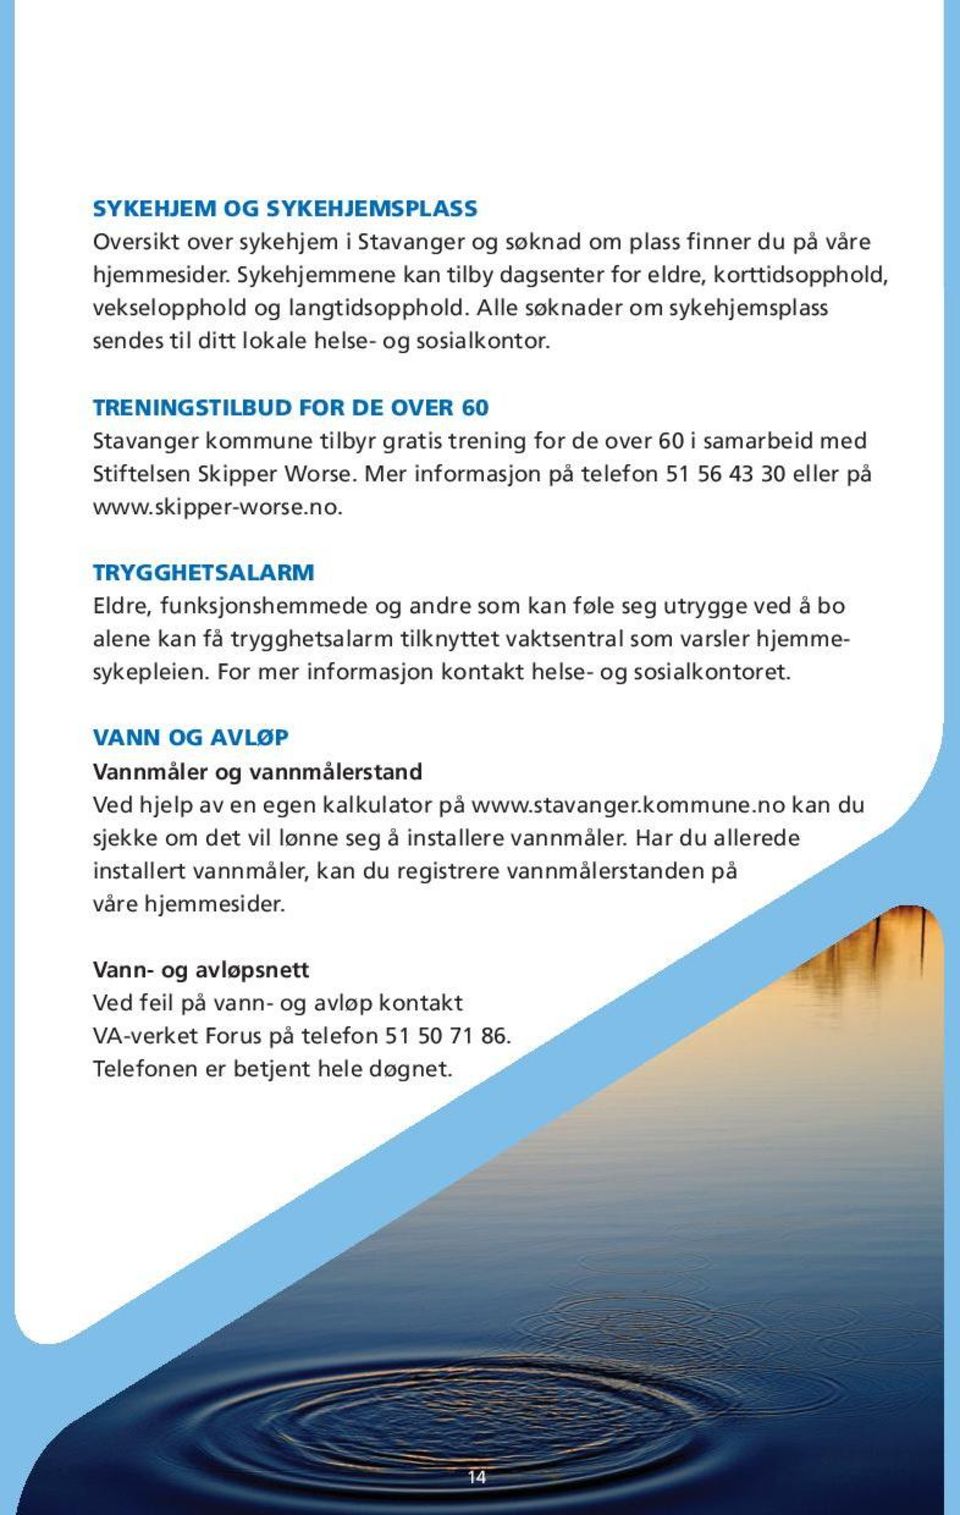 TRENINGSTILBUD FOR DE OVER 60 Stavanger kommune tilbyr gratis trening for de over 60 i samarbeid med Stiftelsen Skipper Worse. Mer informasjon på telefon 51 56 43 30 eller på www.skipper-worse.no.